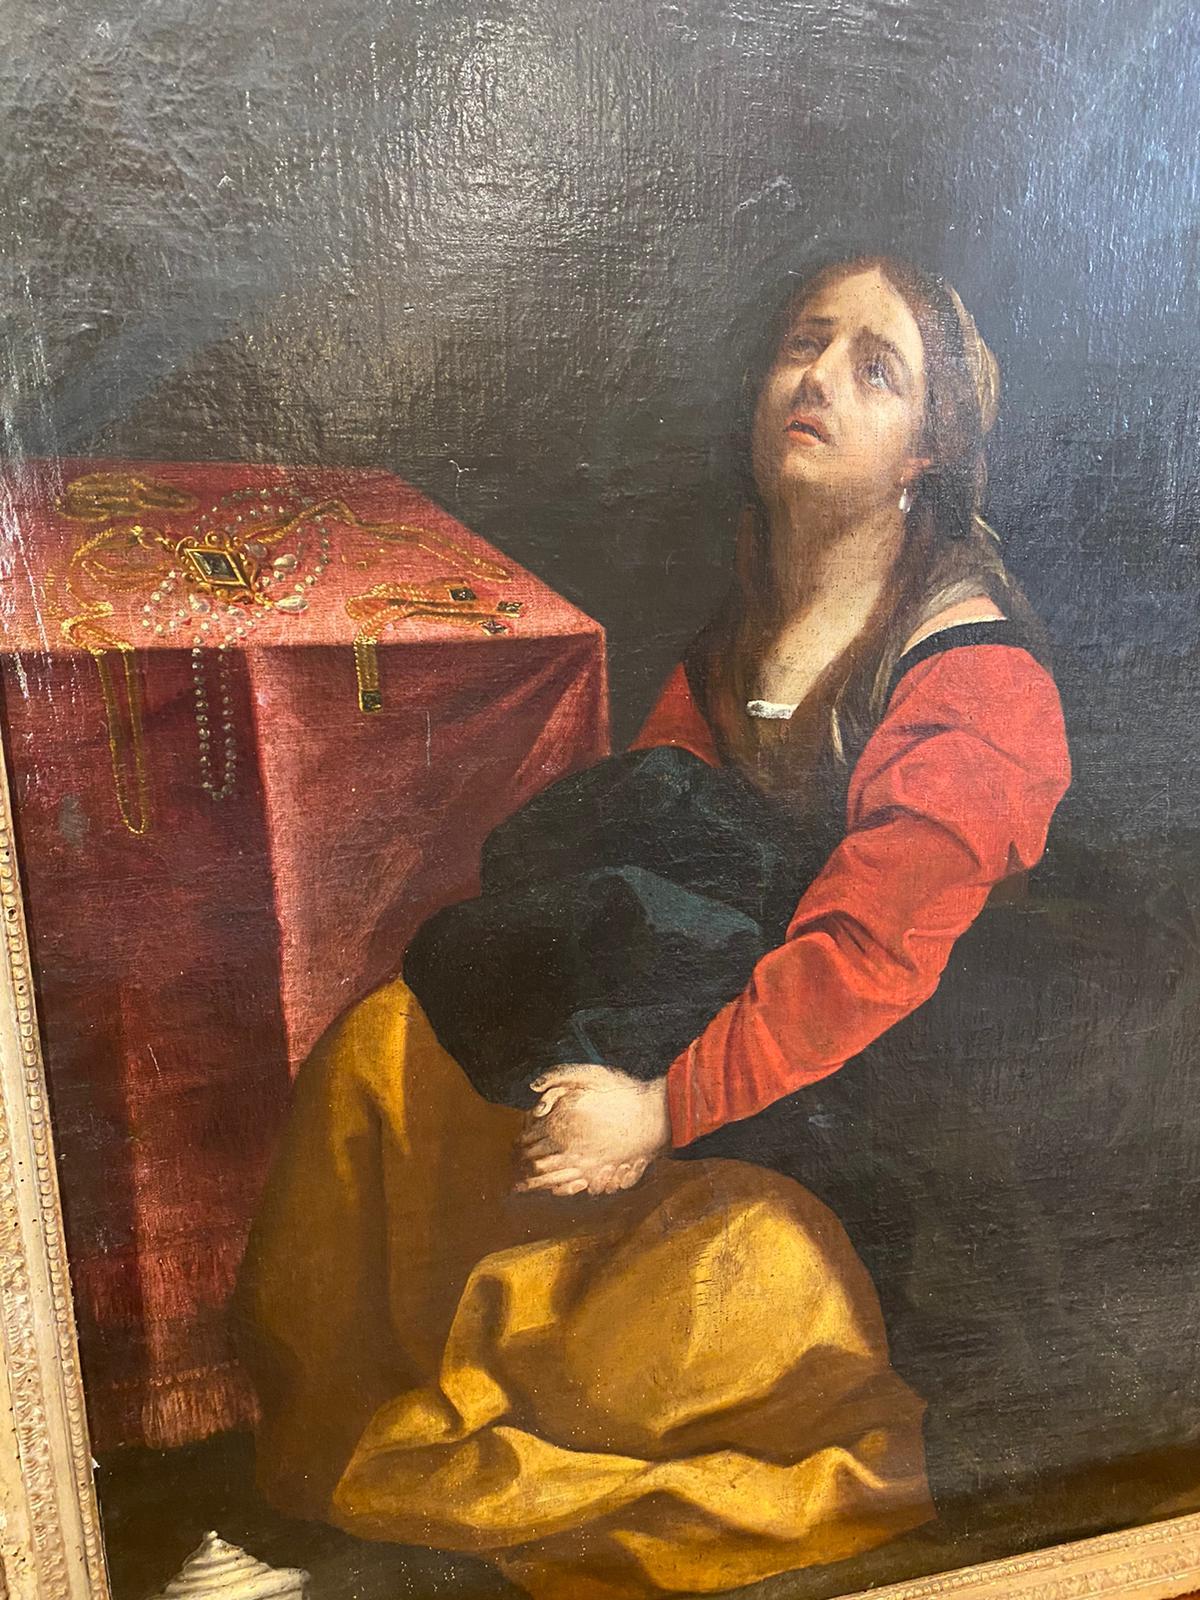 Öl auf Leinwand mit der Darstellung der Magdalena mit Juwelen auf dem Tisch, schöne Farben und das Gesicht des Heiligen Ausdruck. Vermutlich italienischer Maler aus Mittelitalien, 18. Jahrhundert.